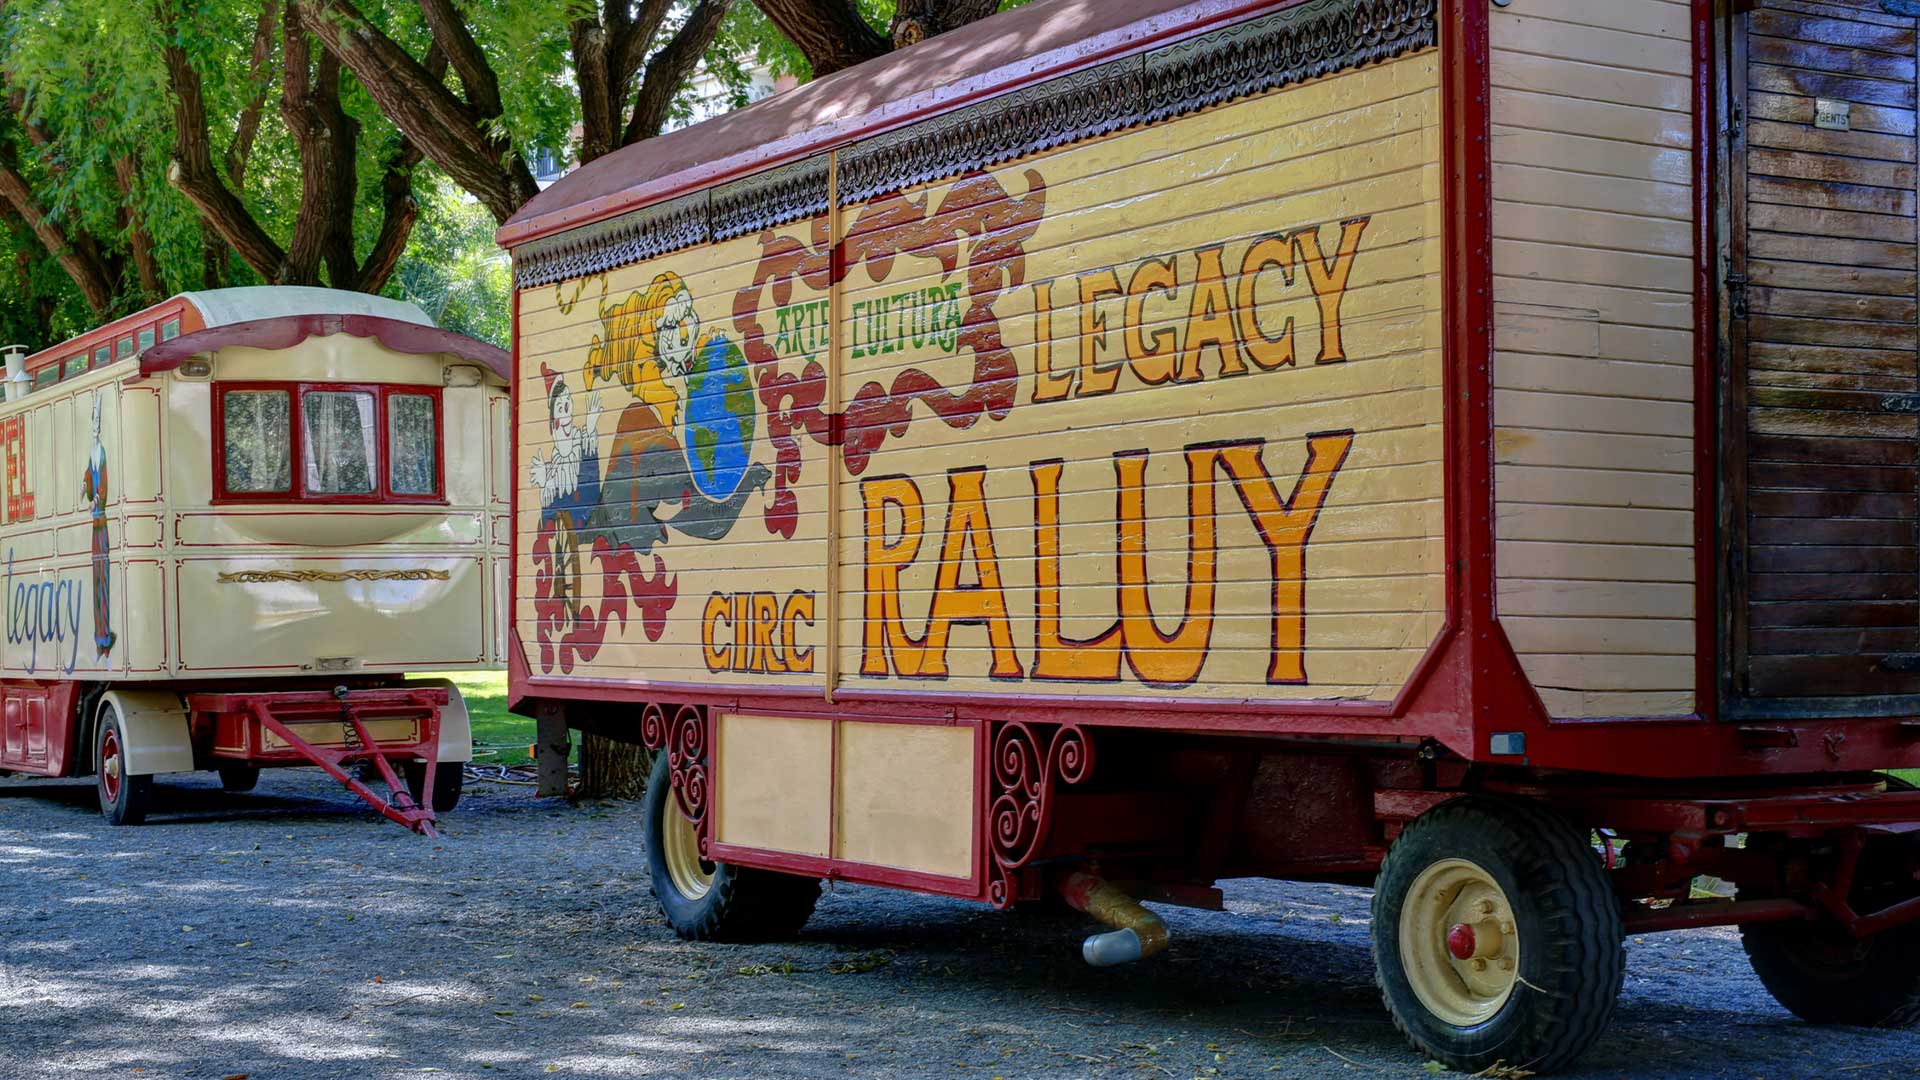 Caravana del circo Raluy Legacy pintadas con su logo y arte circense